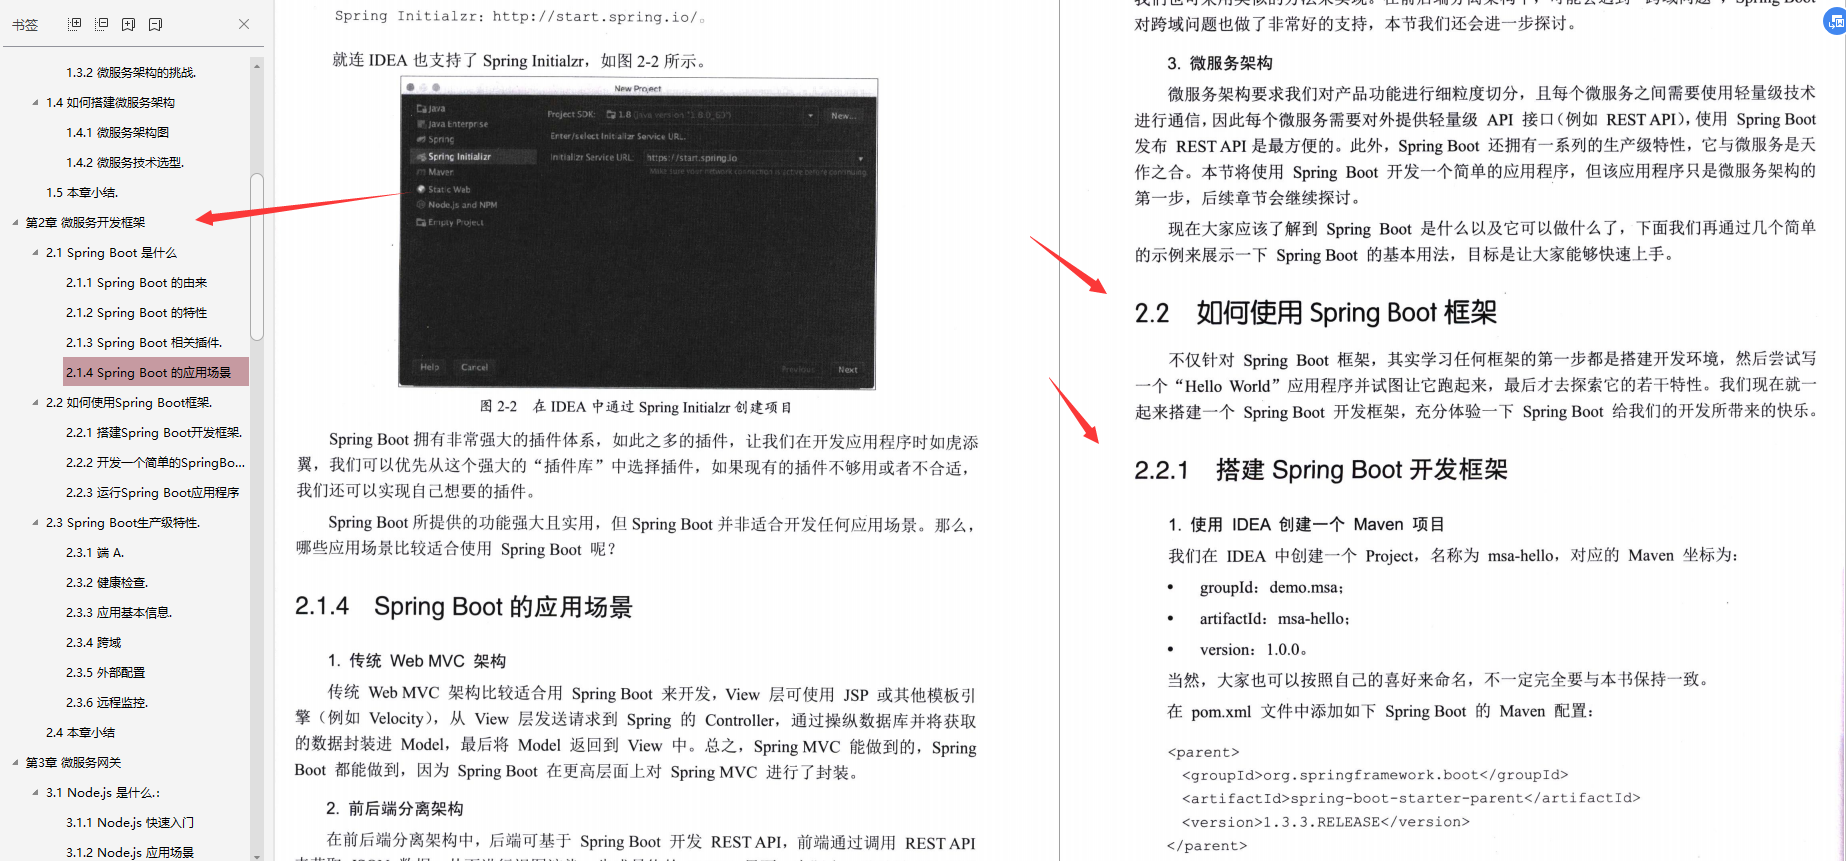 惊喜！Alibaba架构师终于发布“微服务架构与实践”文档